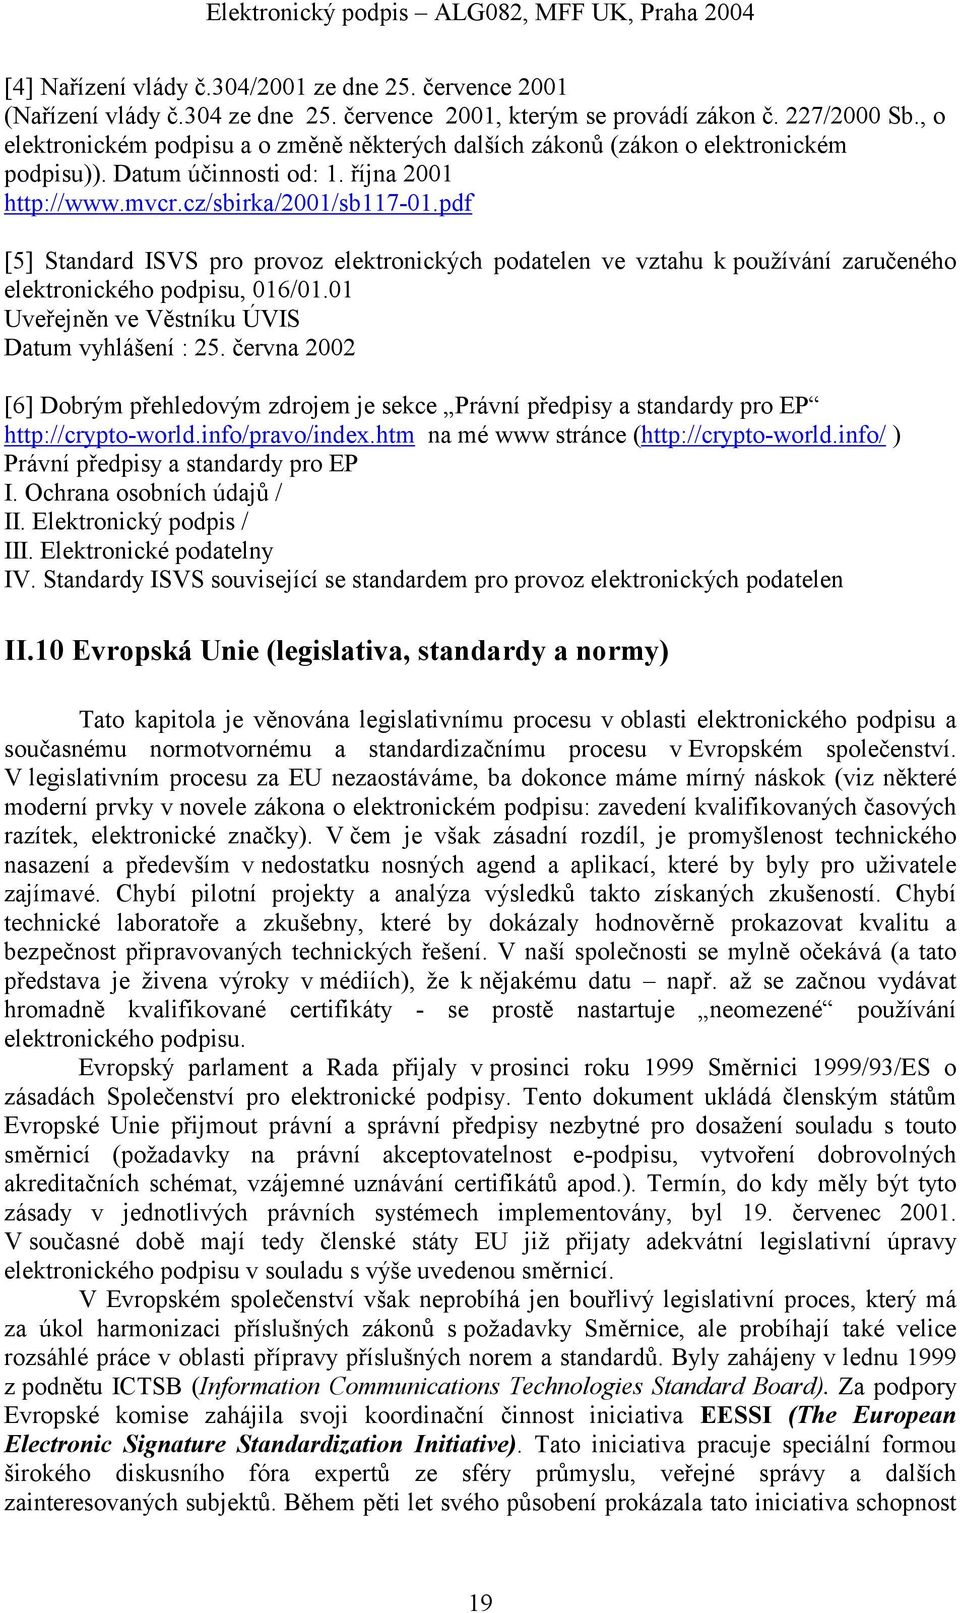 pdf [5] Standard ISVS pro provoz elektronických podatelen ve vztahu k používání zaručeného elektronického podpisu, 016/01.01 Uveřejněn ve Věstníku ÚVIS Datum vyhlášení : 25.